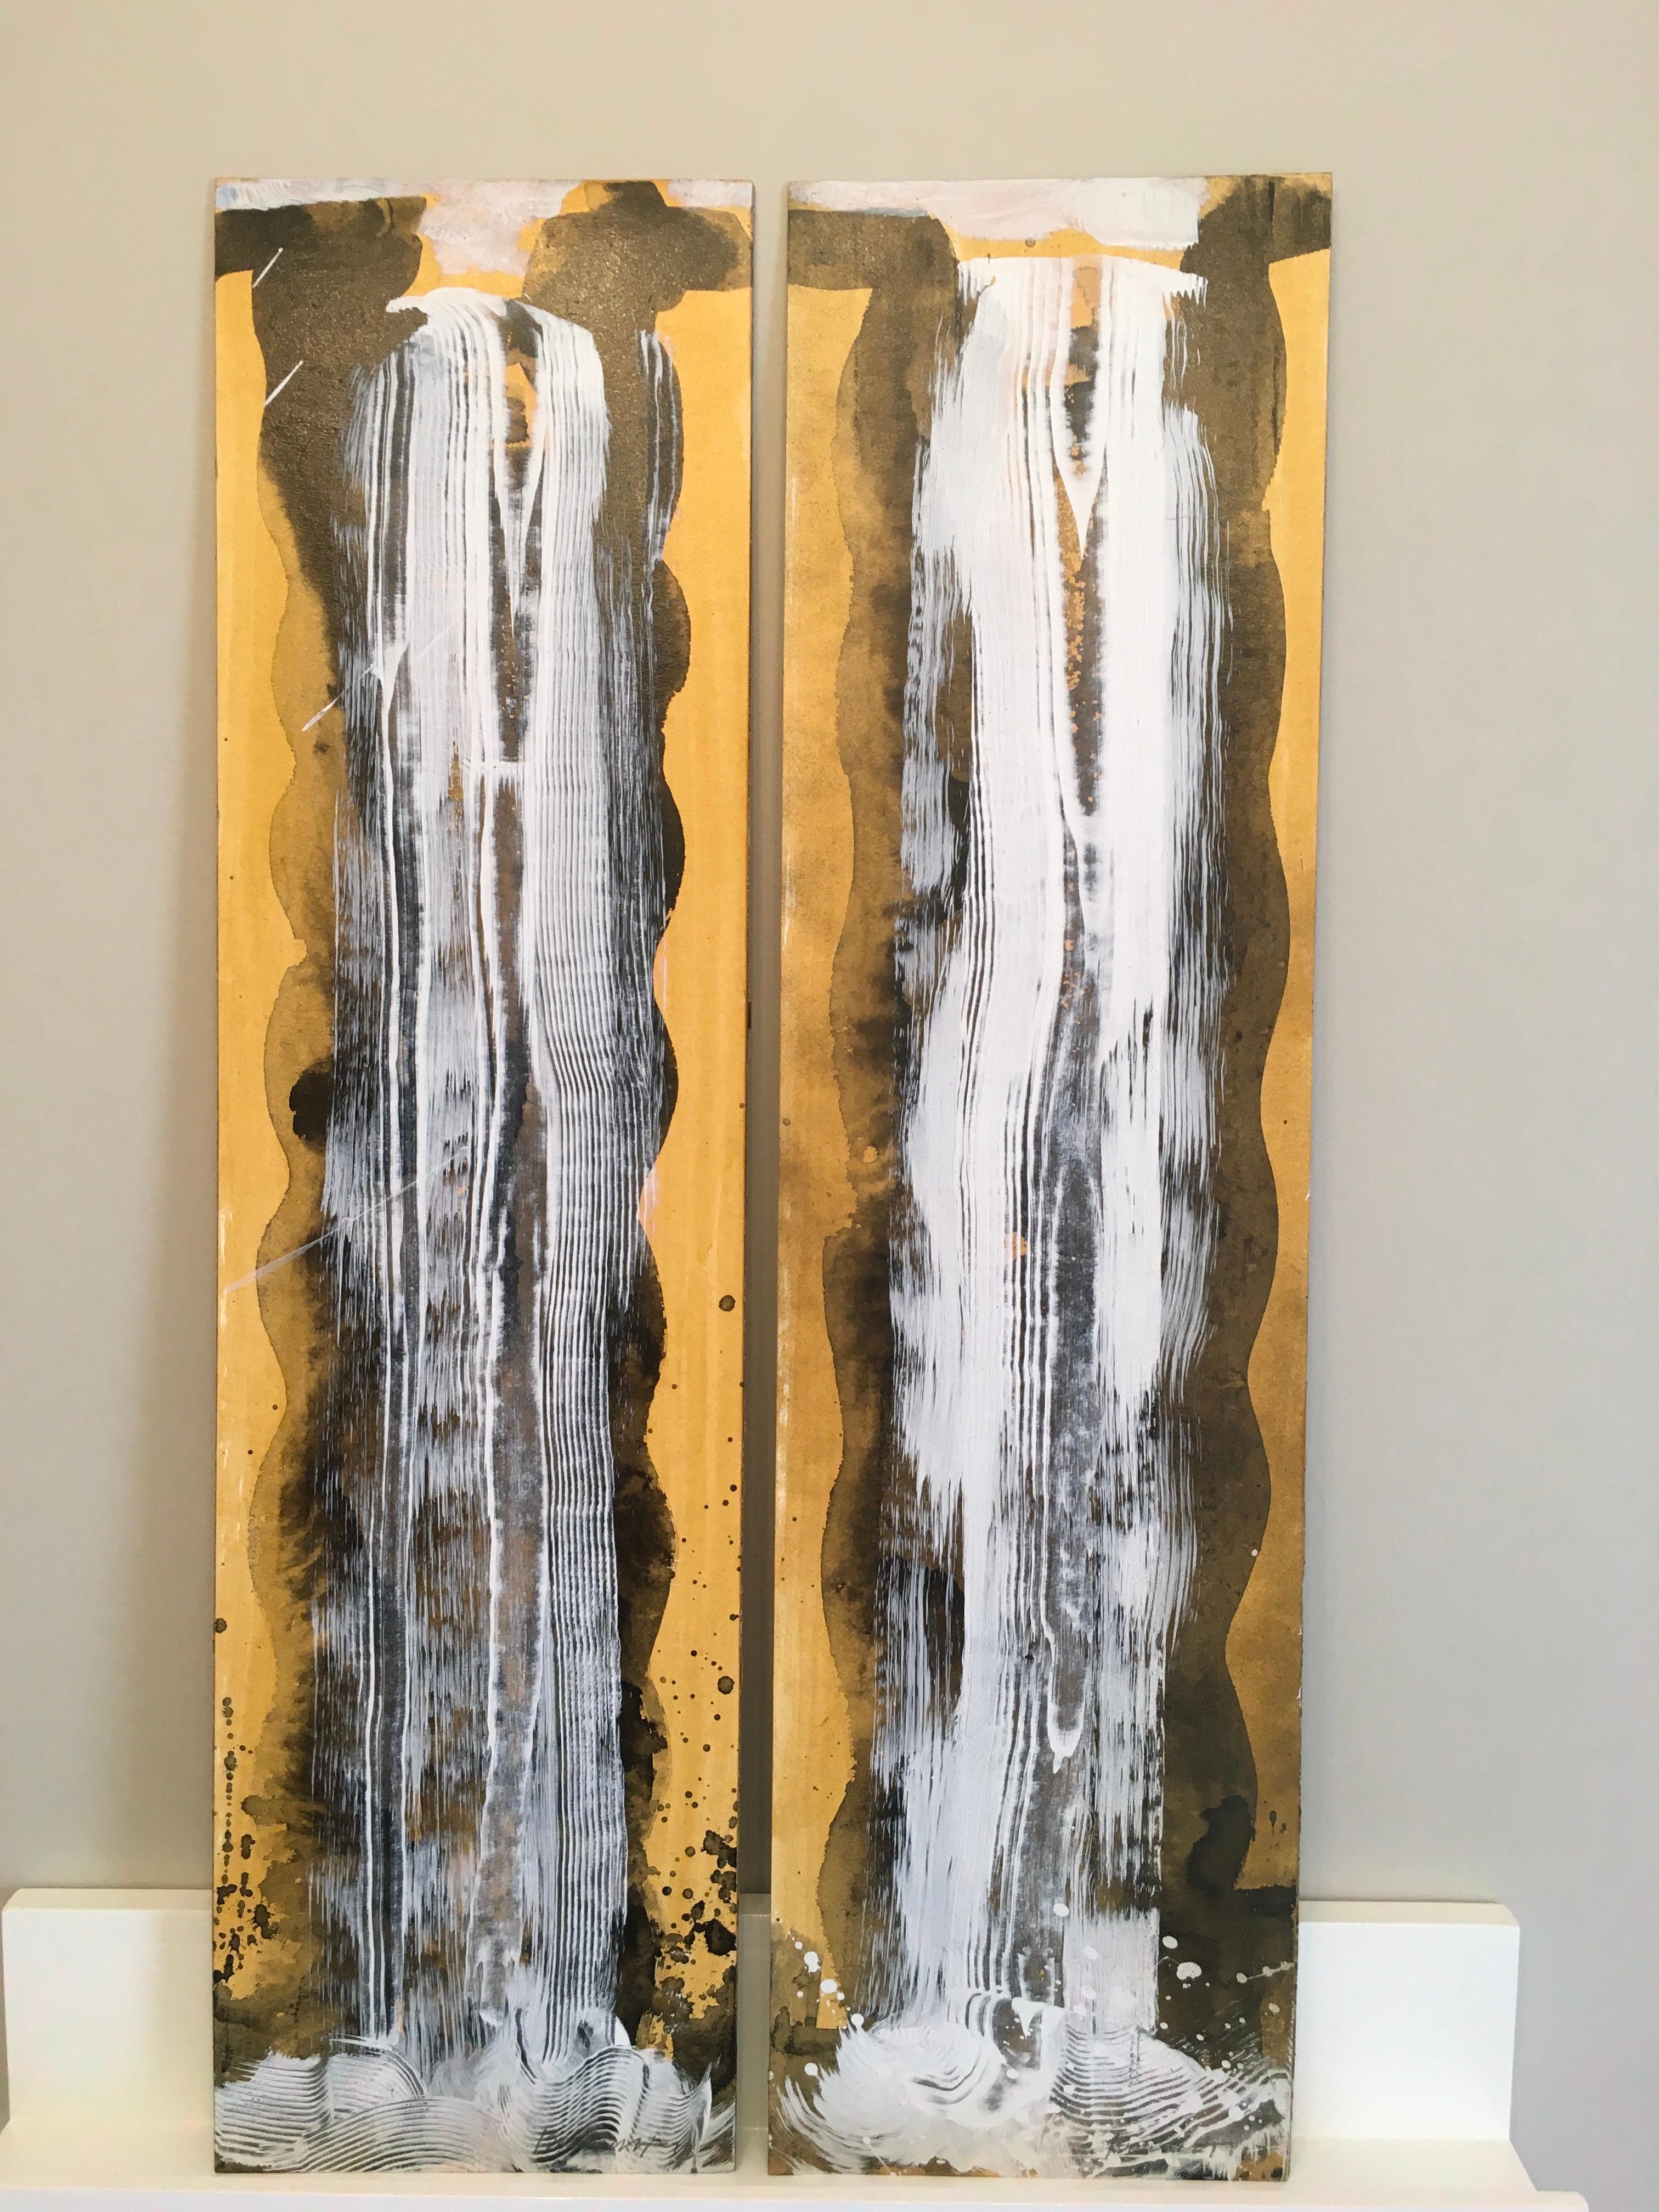 Waterfall Duet 2 est une peinture originale de cascade réalisée par l'artiste hawaïenne Carol Bennett.  Elle rappelle les magnifiques chutes d'eau qui coulent dans les îles hawaïennes.  Il s'agit d'une peinture à l'acrylique, à l'huile et à la